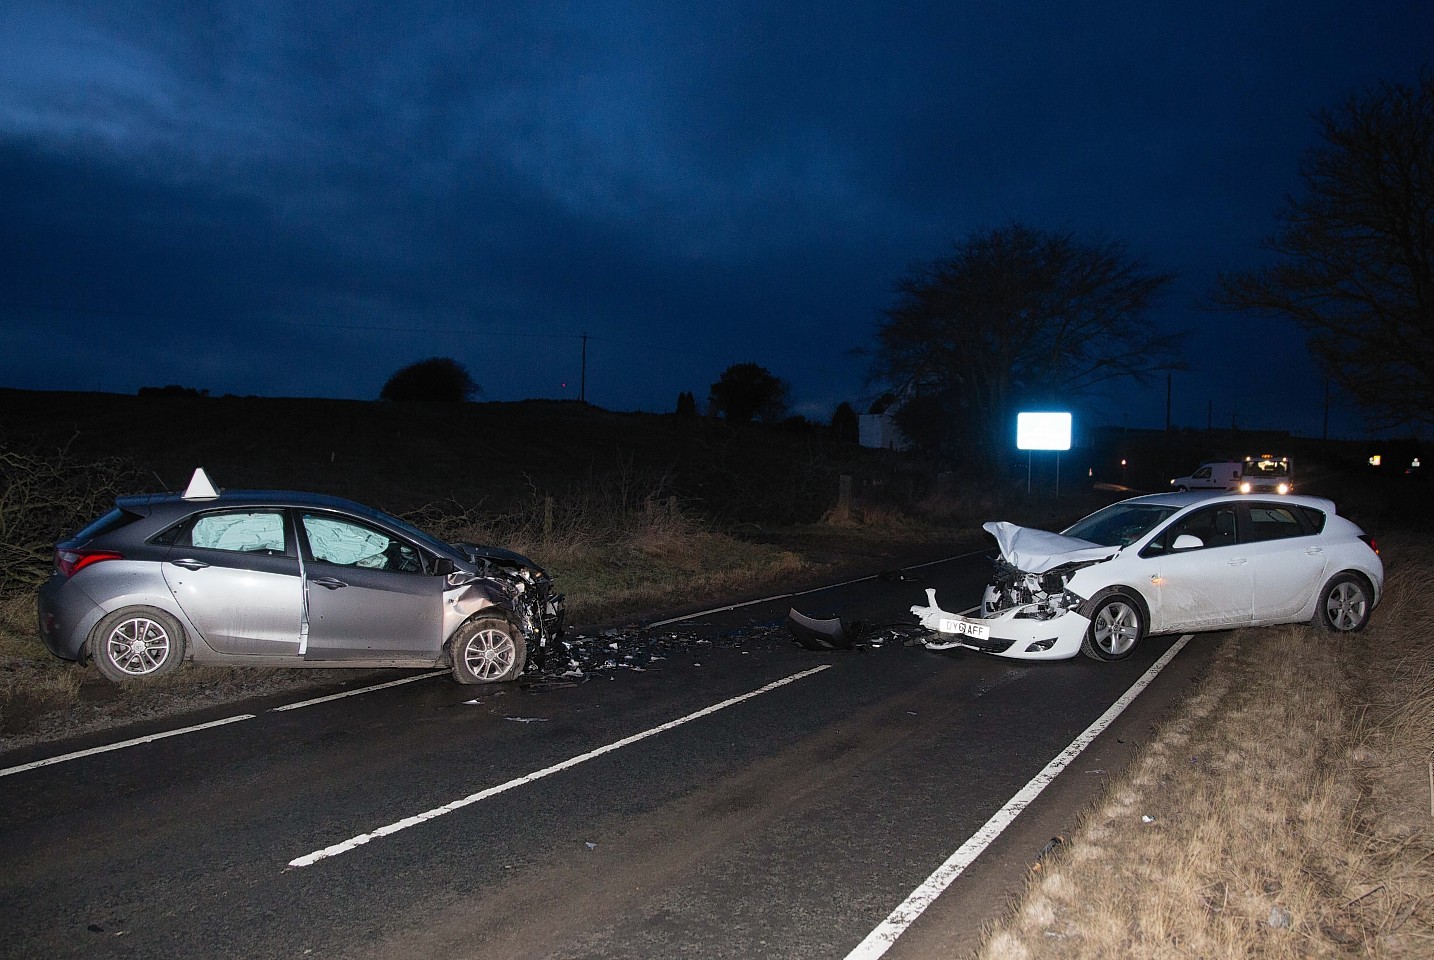 The two car crash near Potterton